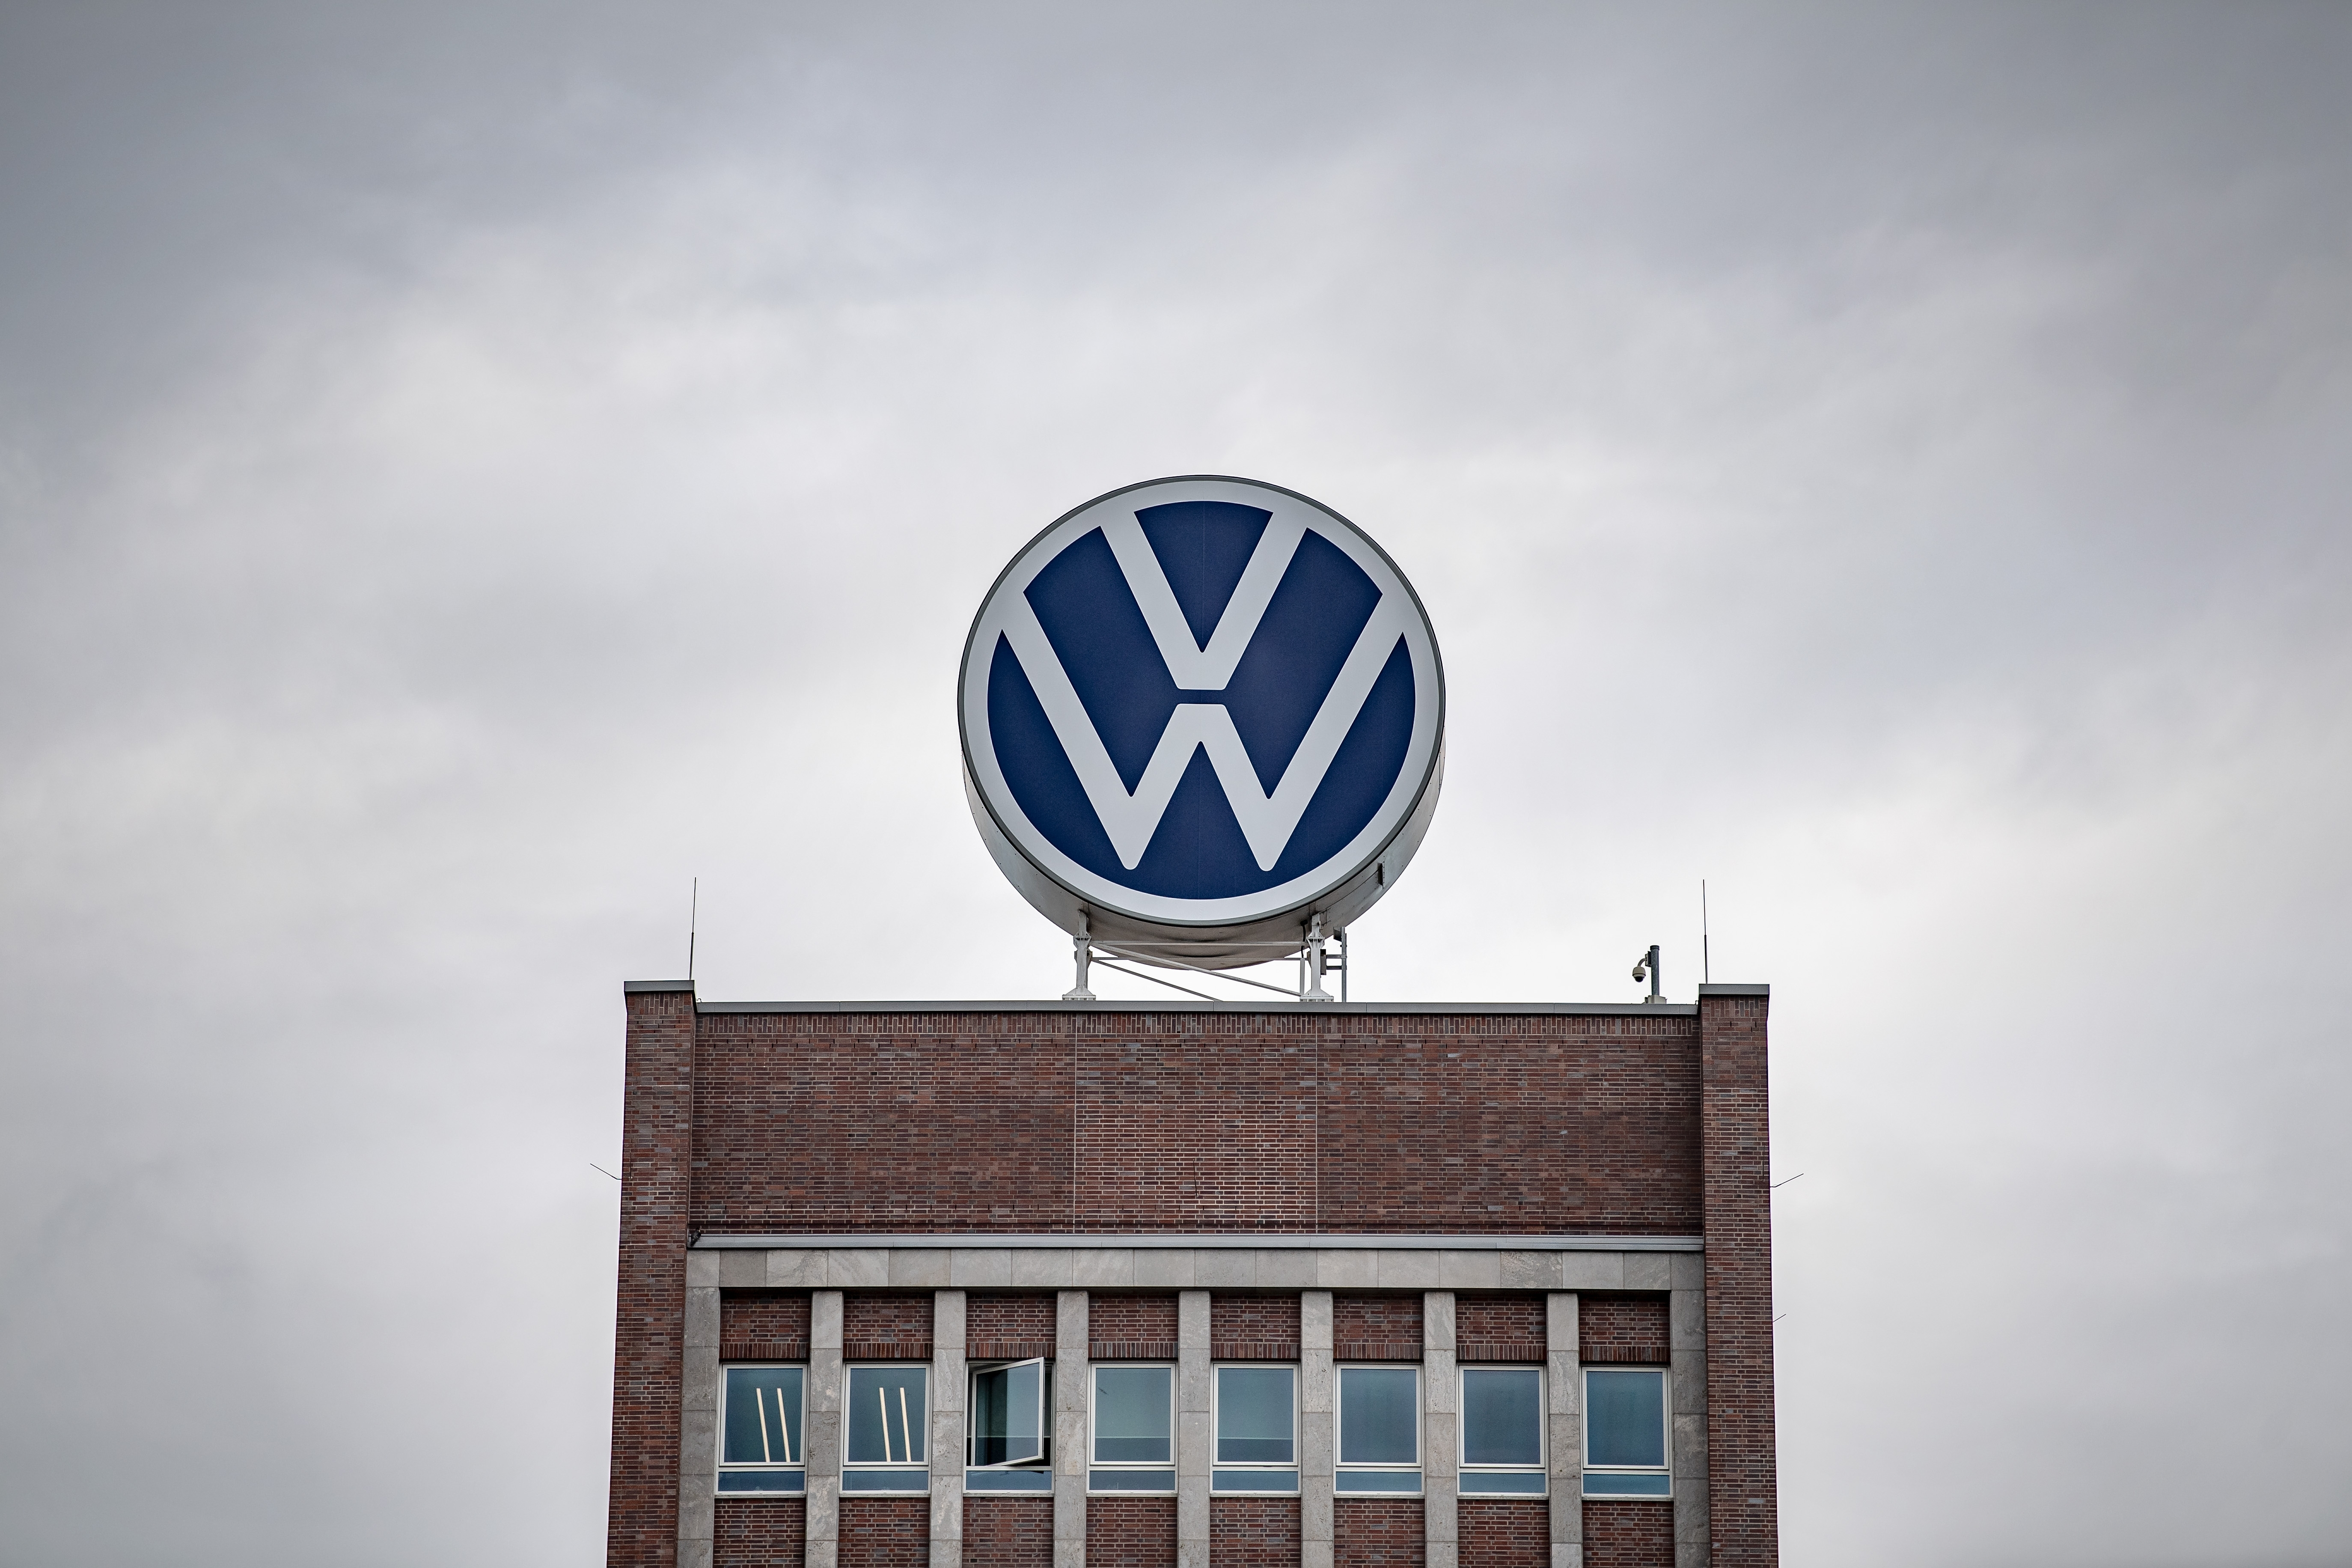 Dice adiós después de 40 años en España e icono de Volkswagen